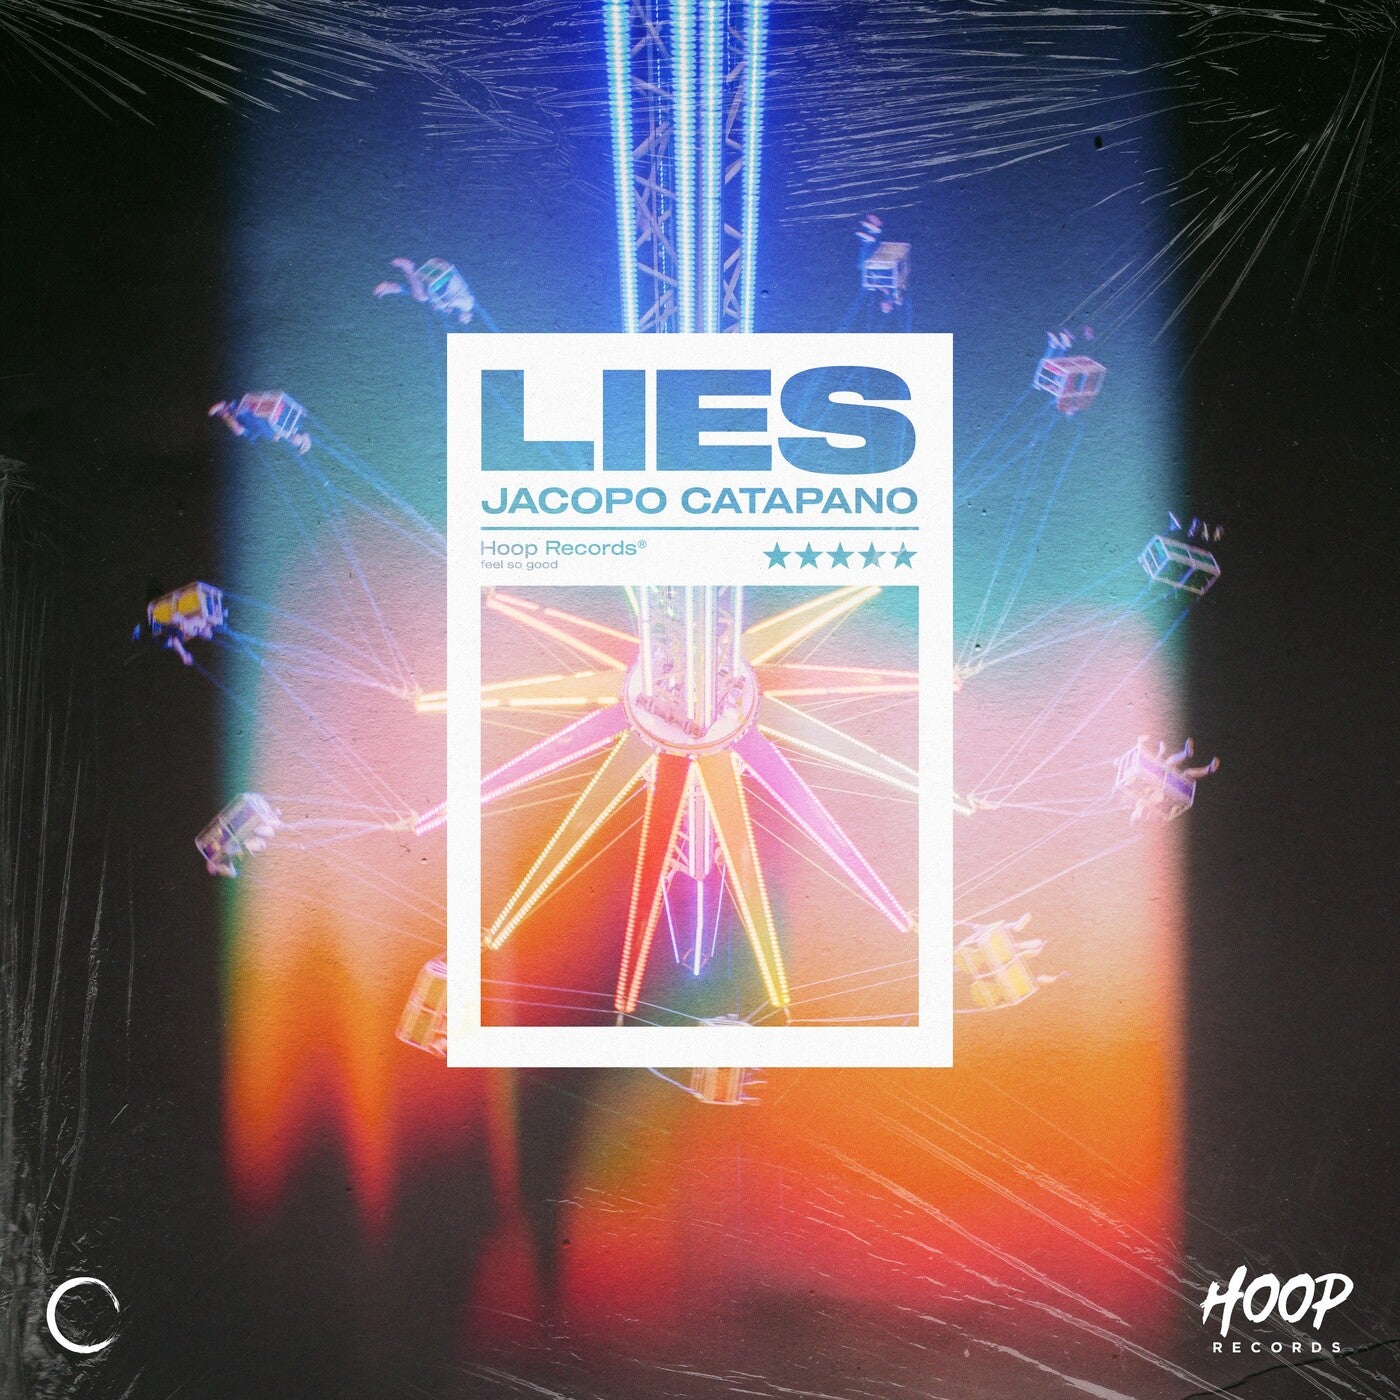 Lies (Extended Mix)